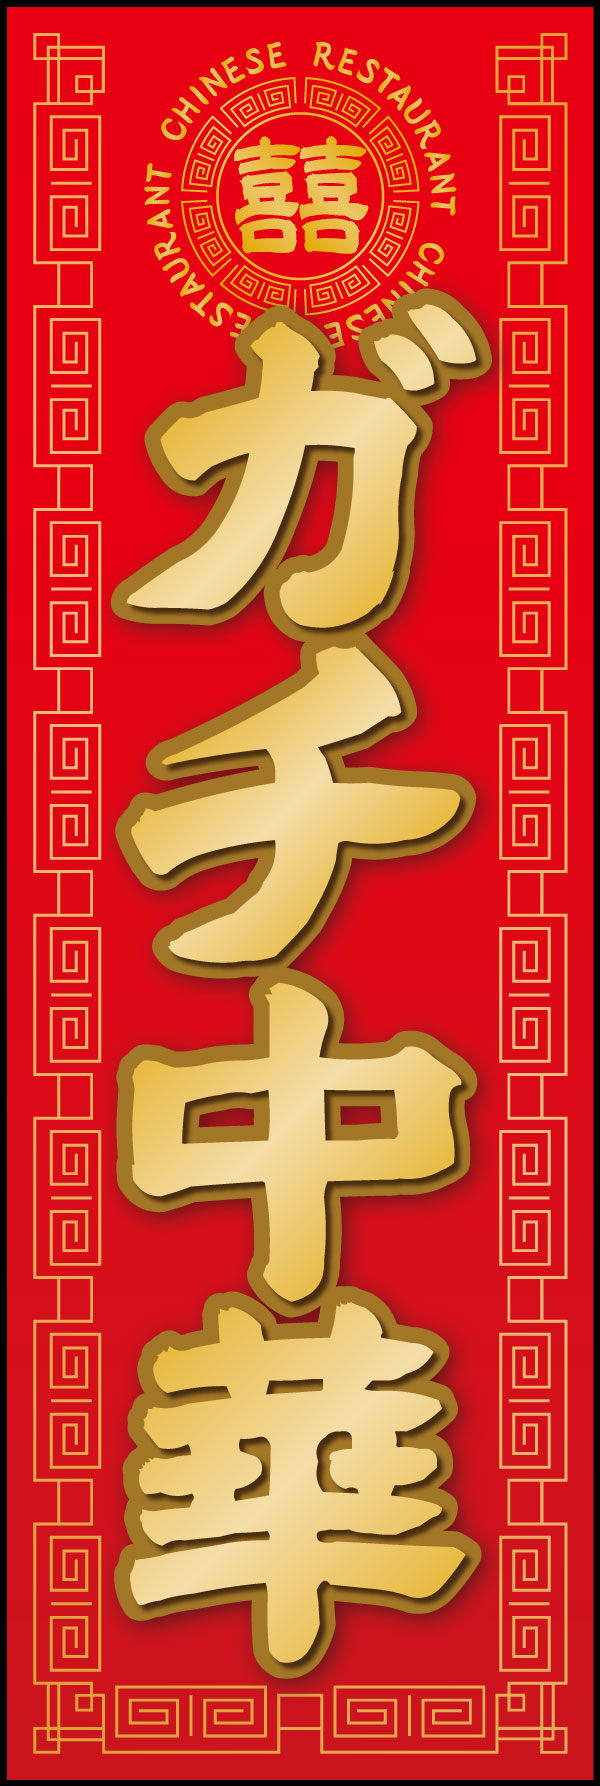 ガチ中華 6「ガチ中華」ののぼりです。本場中国の料理が楽しめるお店にぴったりなデザインにしました。(Y.M) 